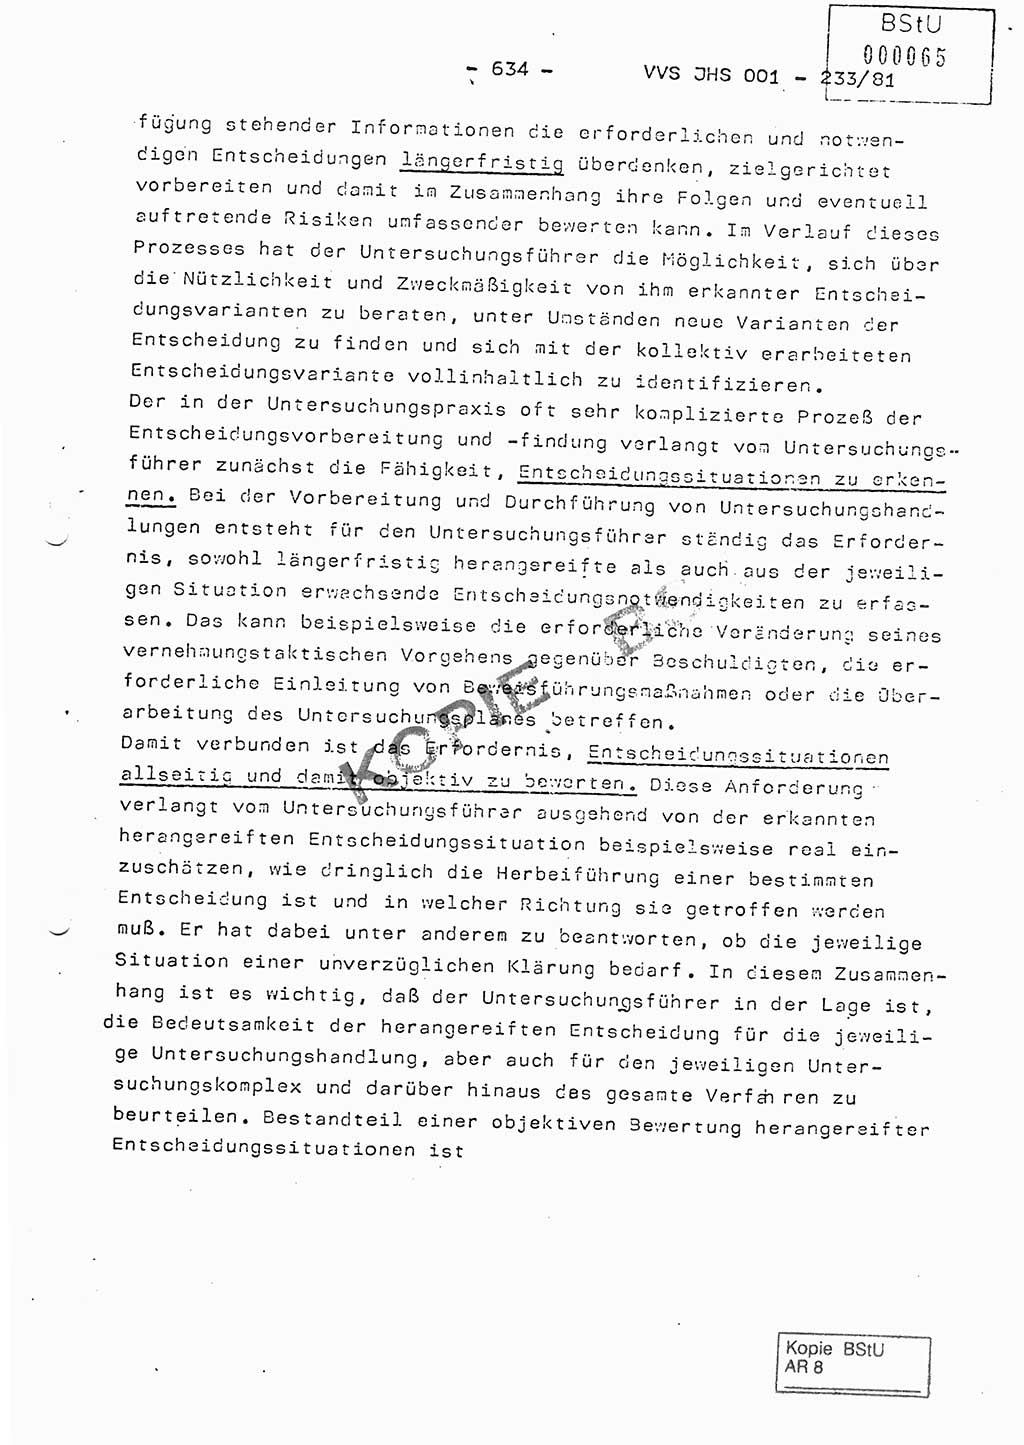 Dissertation Oberstleutnant Horst Zank (JHS), Oberstleutnant Dr. Karl-Heinz Knoblauch (JHS), Oberstleutnant Gustav-Adolf Kowalewski (HA Ⅸ), Oberstleutnant Wolfgang Plötner (HA Ⅸ), Ministerium für Staatssicherheit (MfS) [Deutsche Demokratische Republik (DDR)], Juristische Hochschule (JHS), Vertrauliche Verschlußsache (VVS) o001-233/81, Potsdam 1981, Blatt 634 (Diss. MfS DDR JHS VVS o001-233/81 1981, Bl. 634)